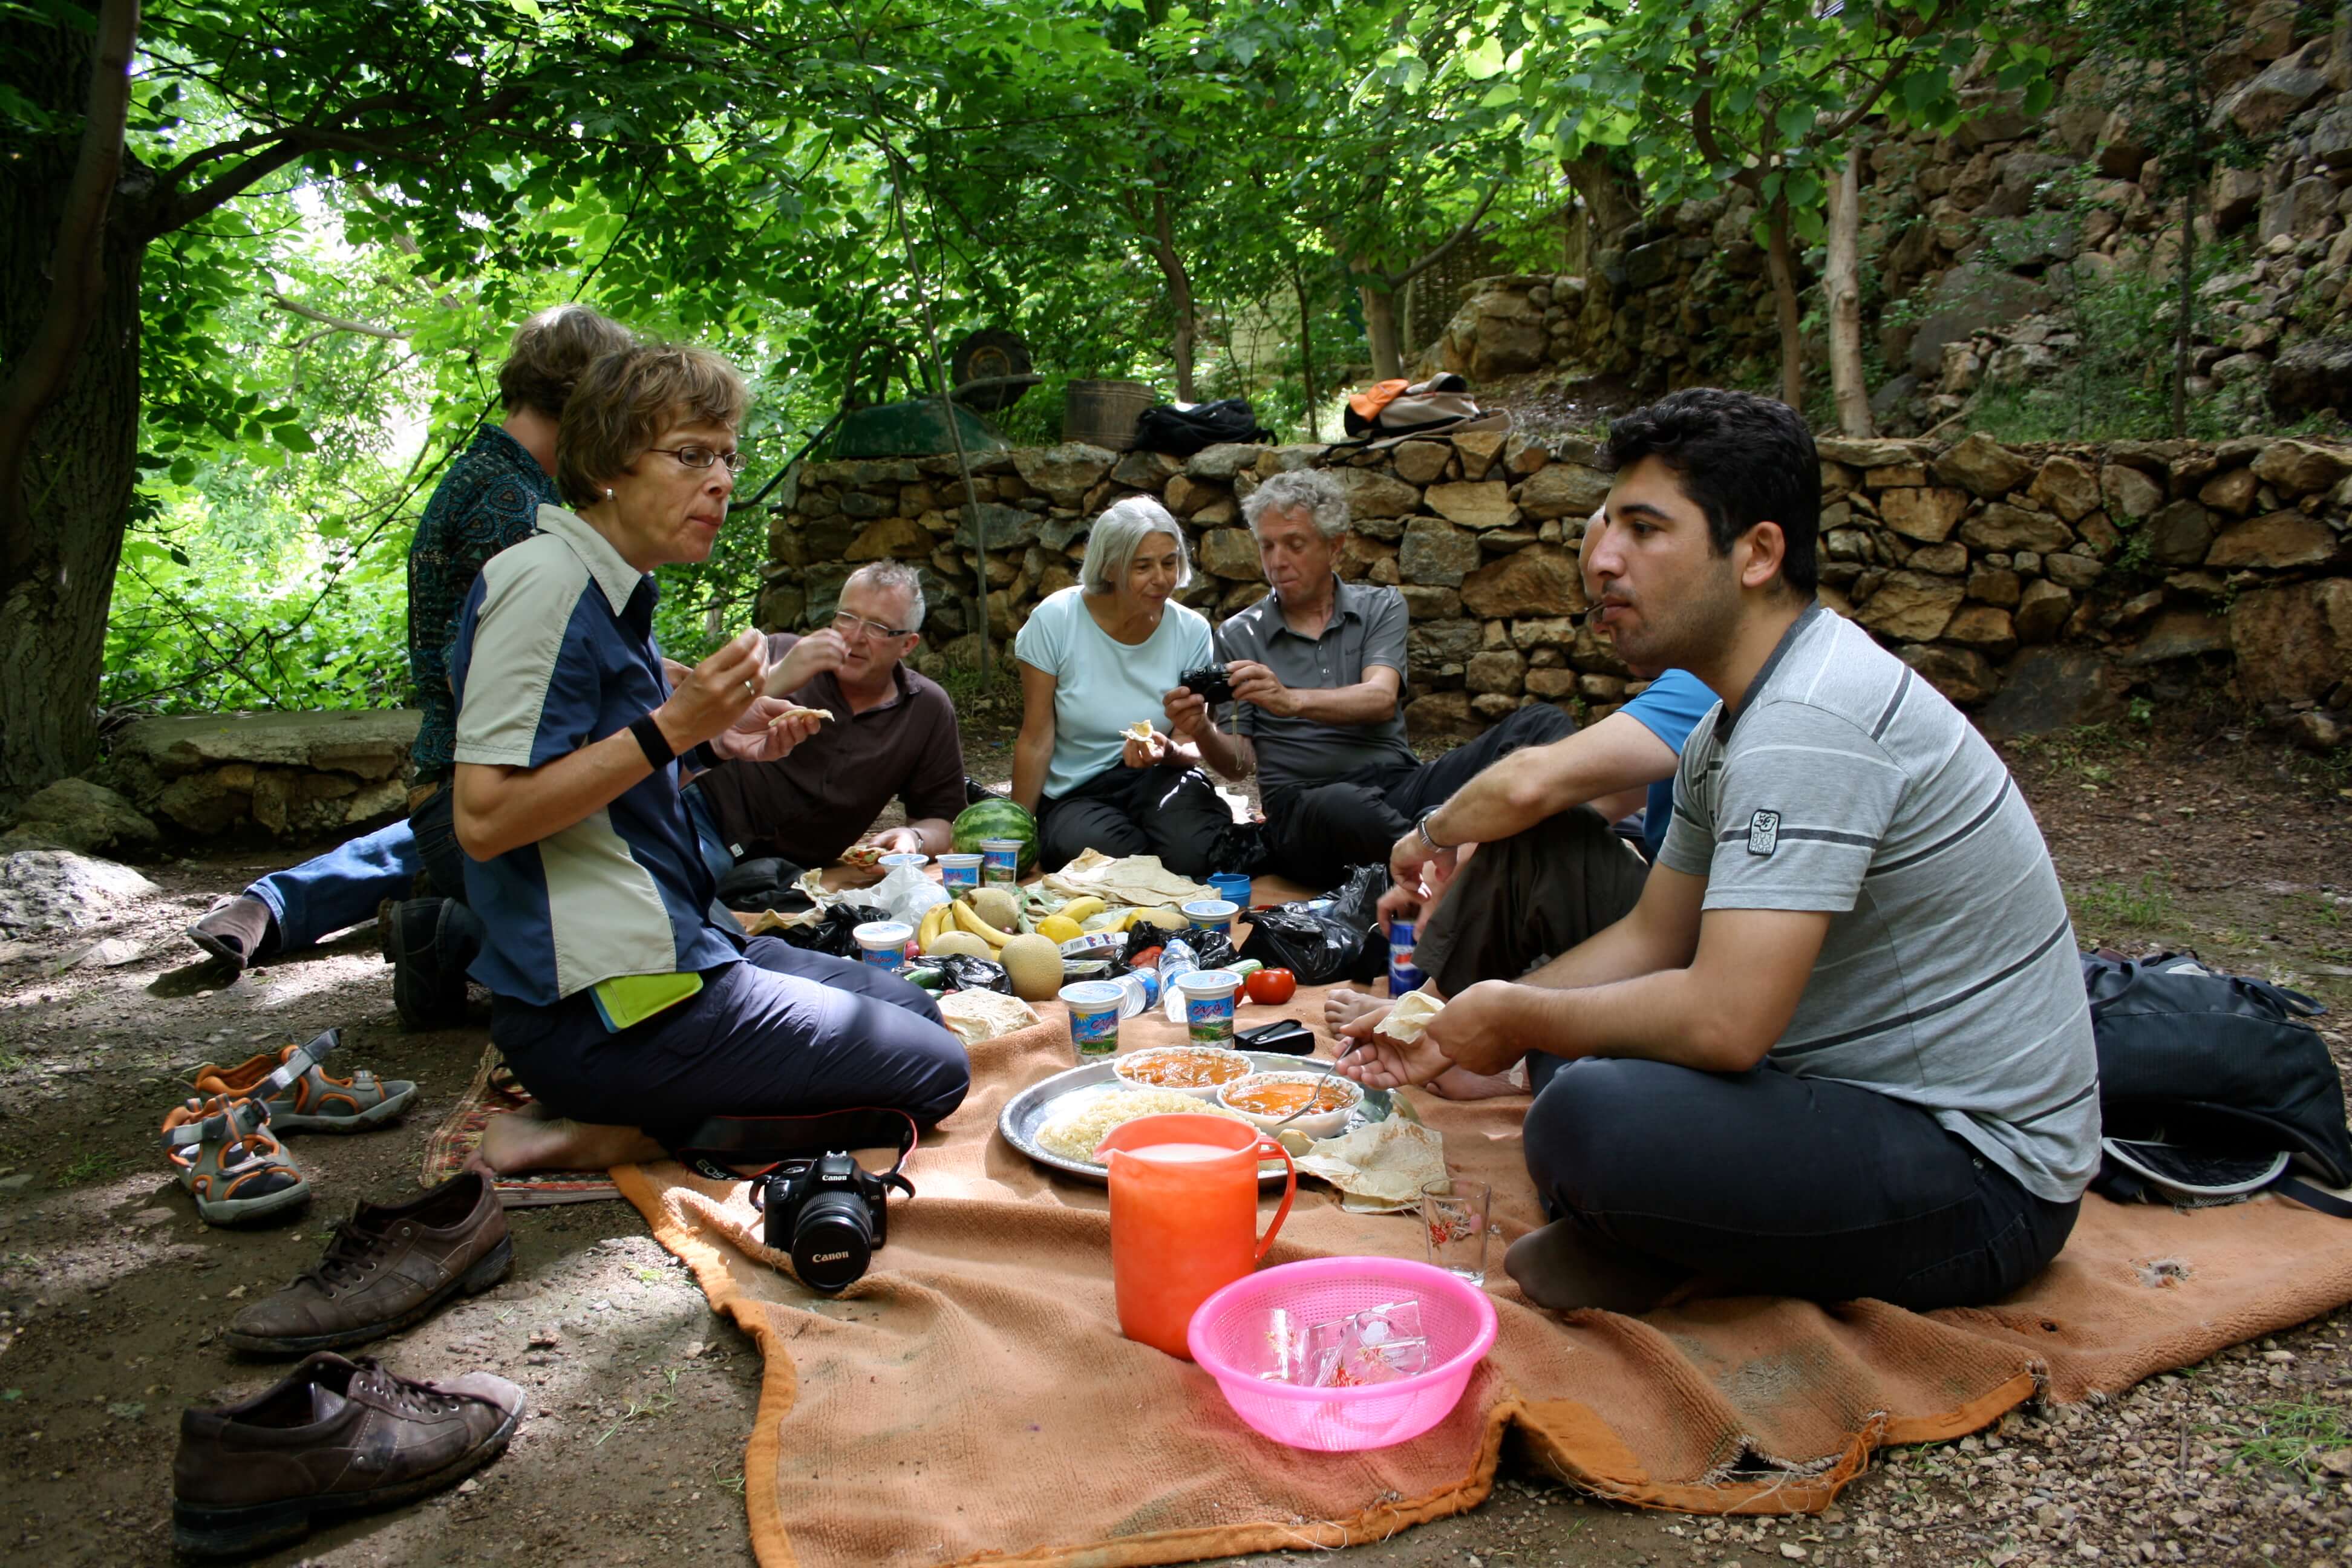 irak, picknick met groep samen eten.jpg